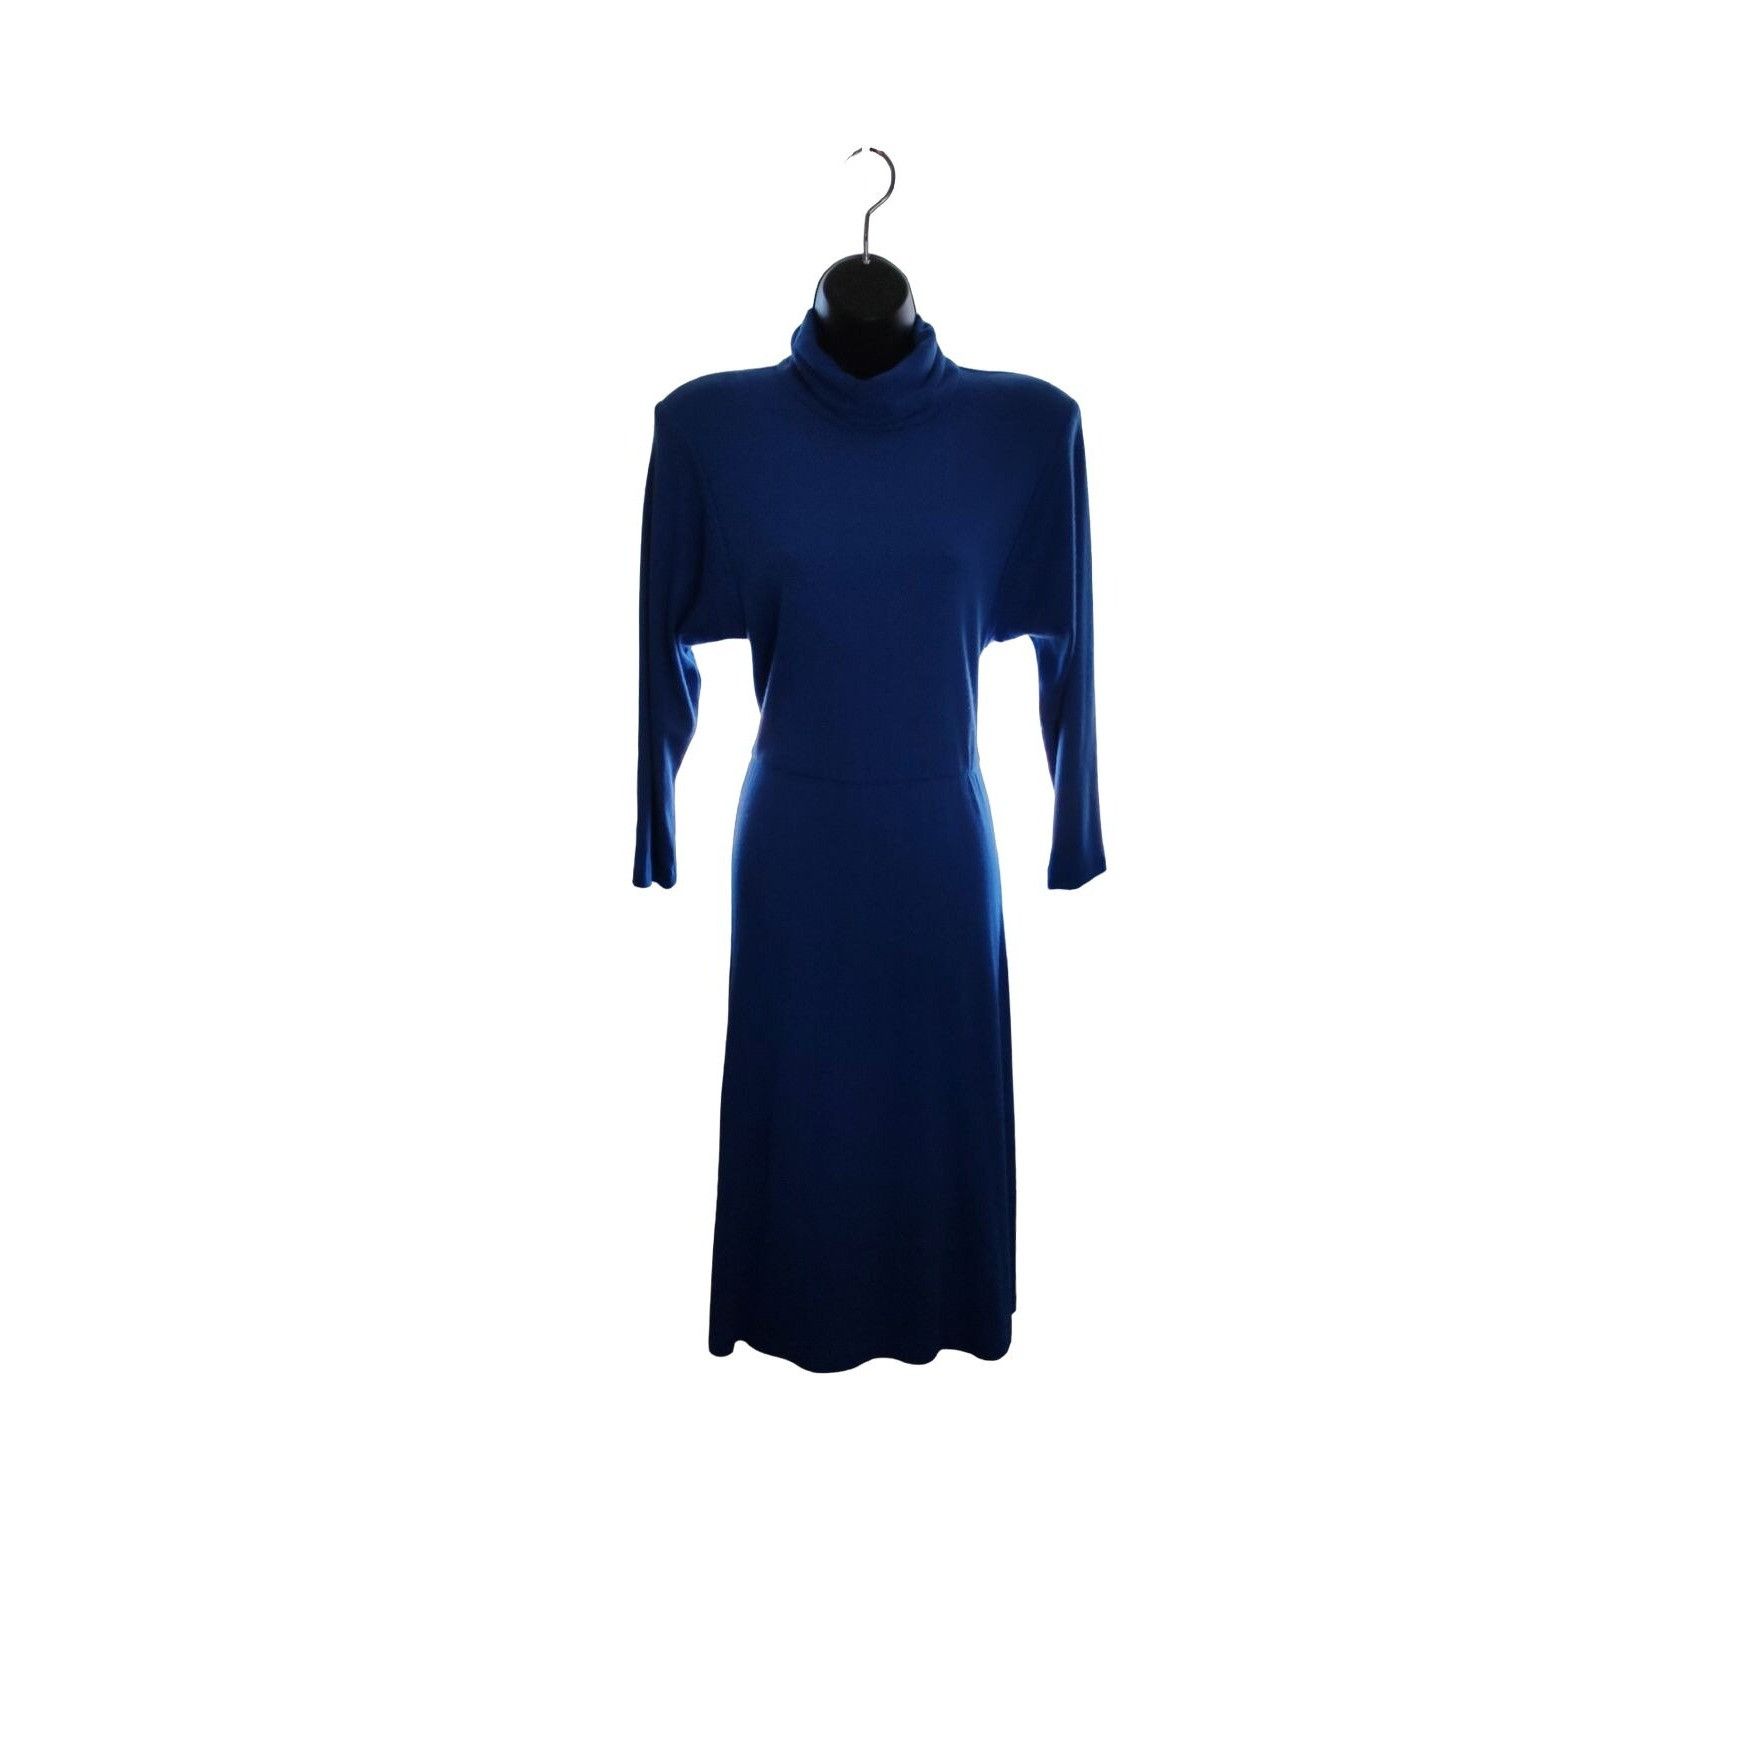 Vintage 1980's Joni Blair Blue Midi Dress Size M / US 6-8 / IT 42-44 - 6 Thumbnail